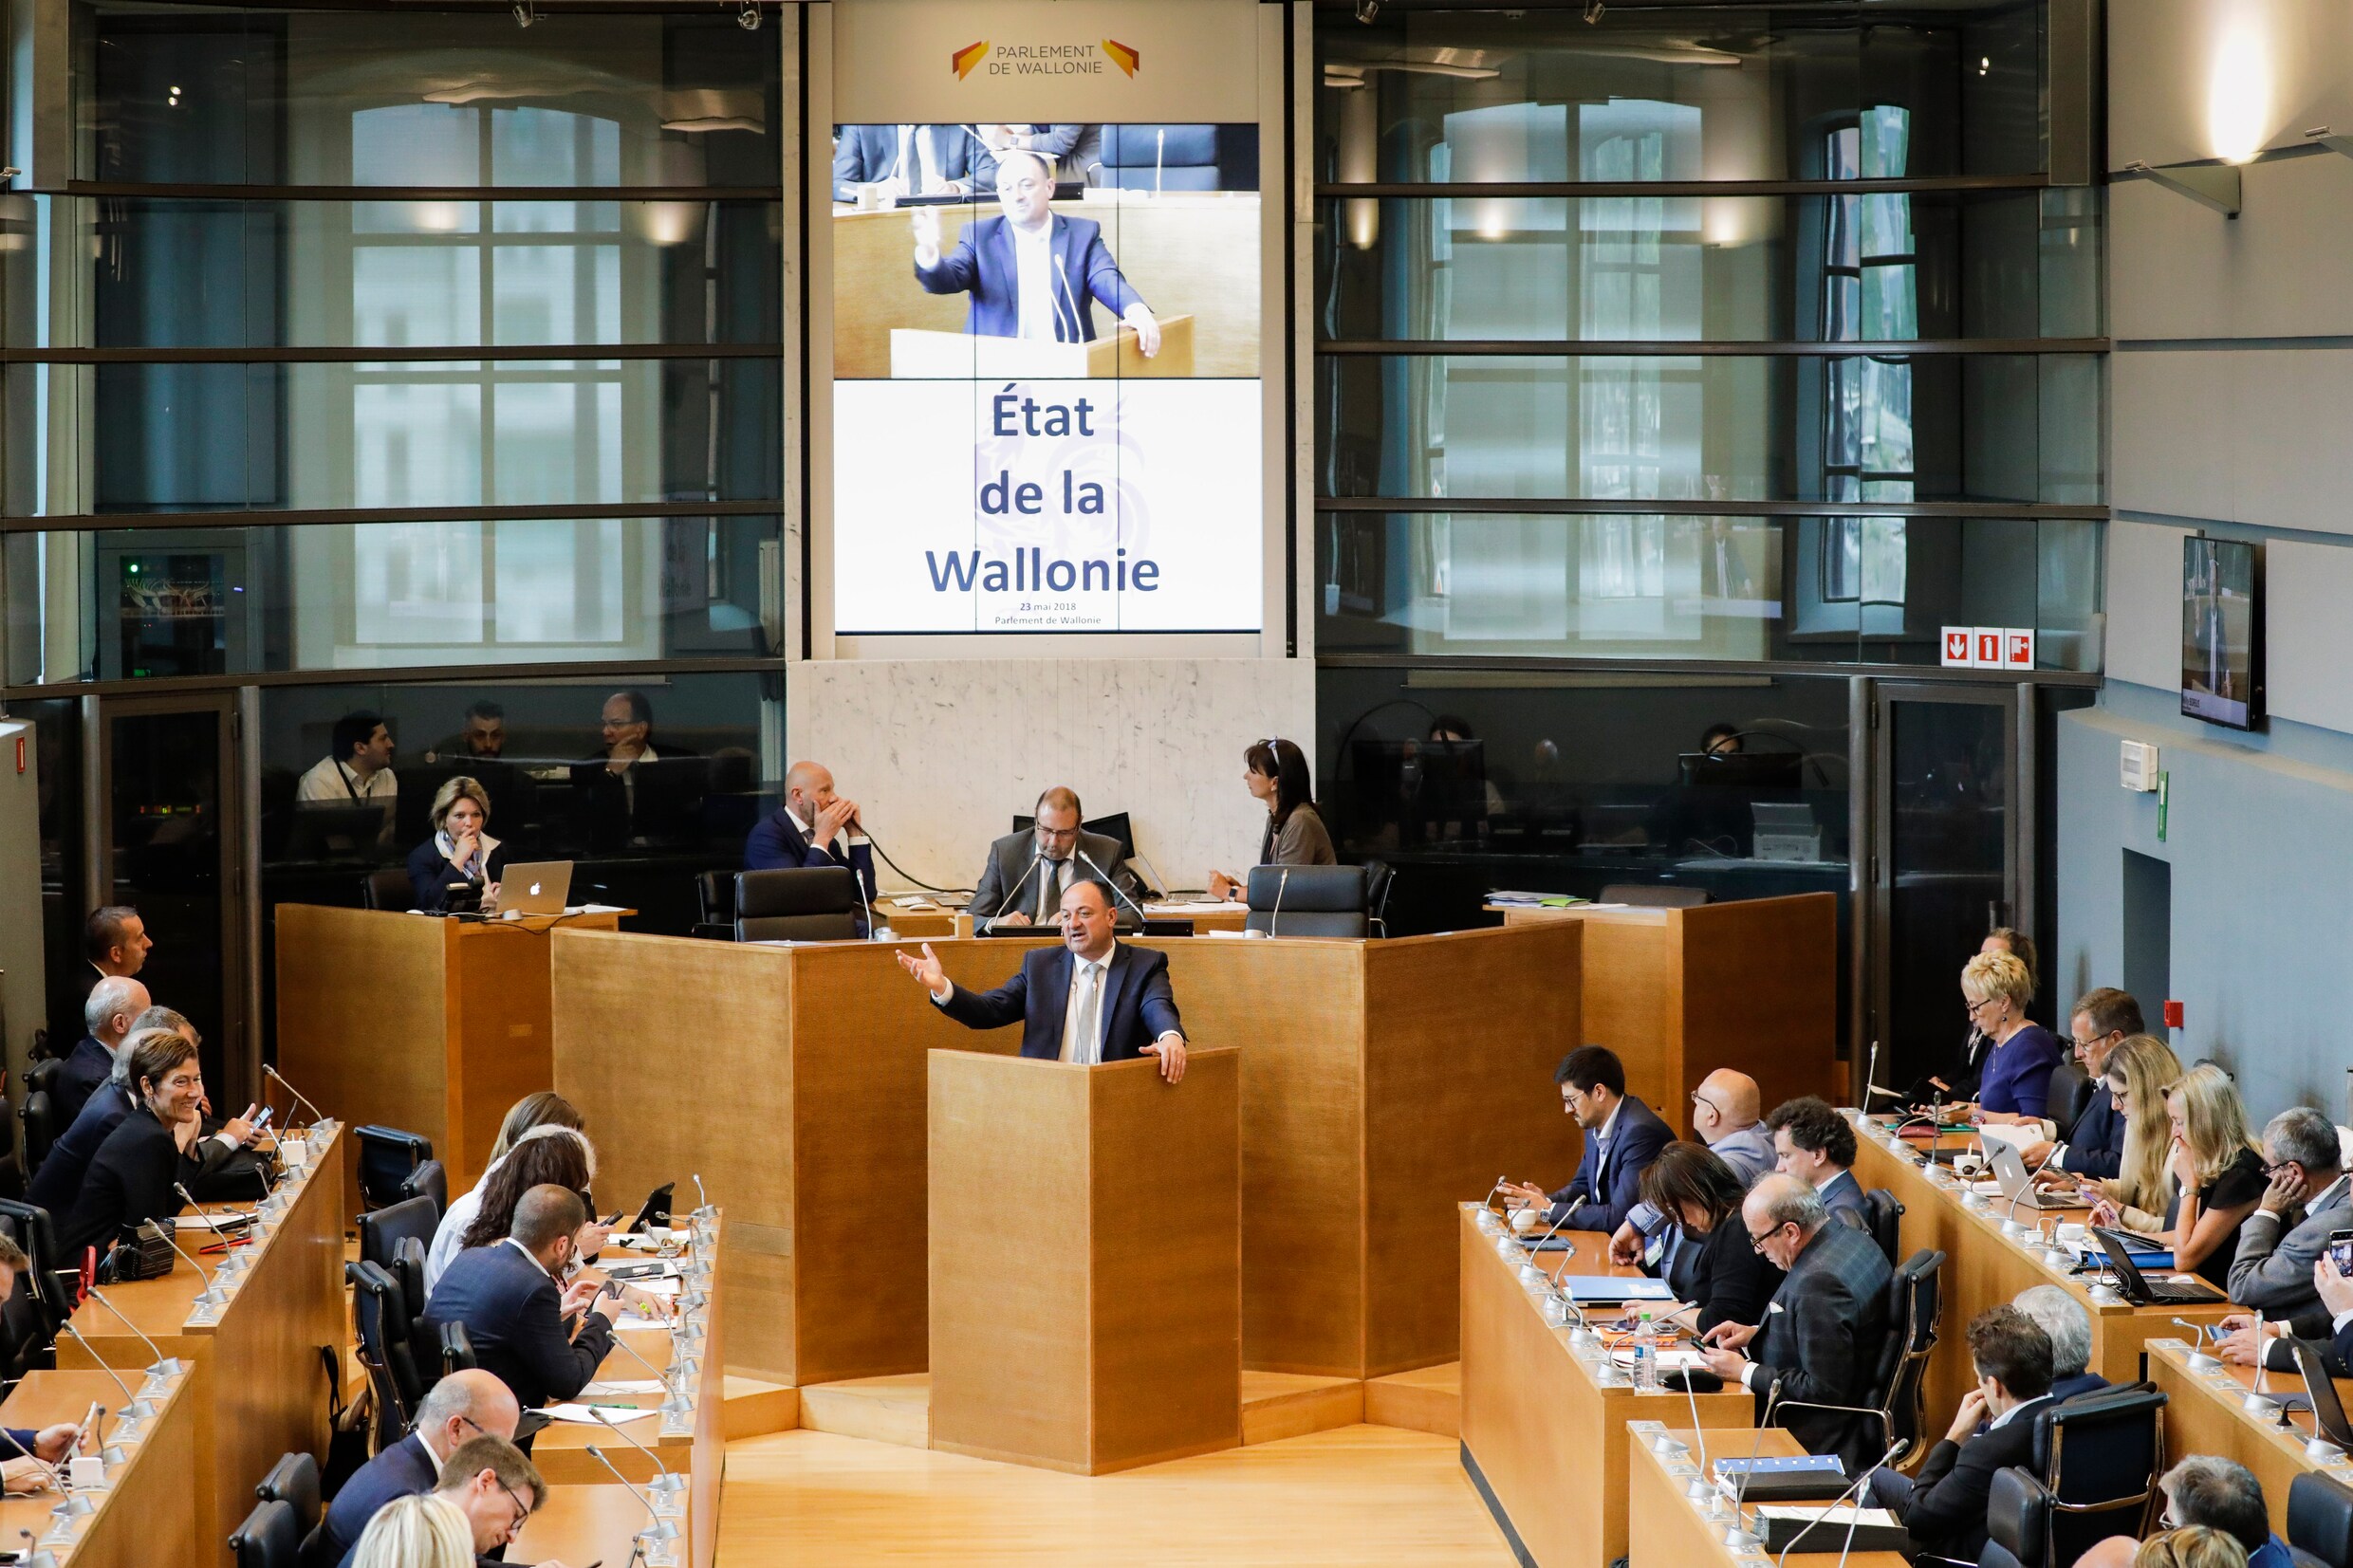 "We lopen veertien jaar achter in Wallonië", zegt Waals minister-president Borsus